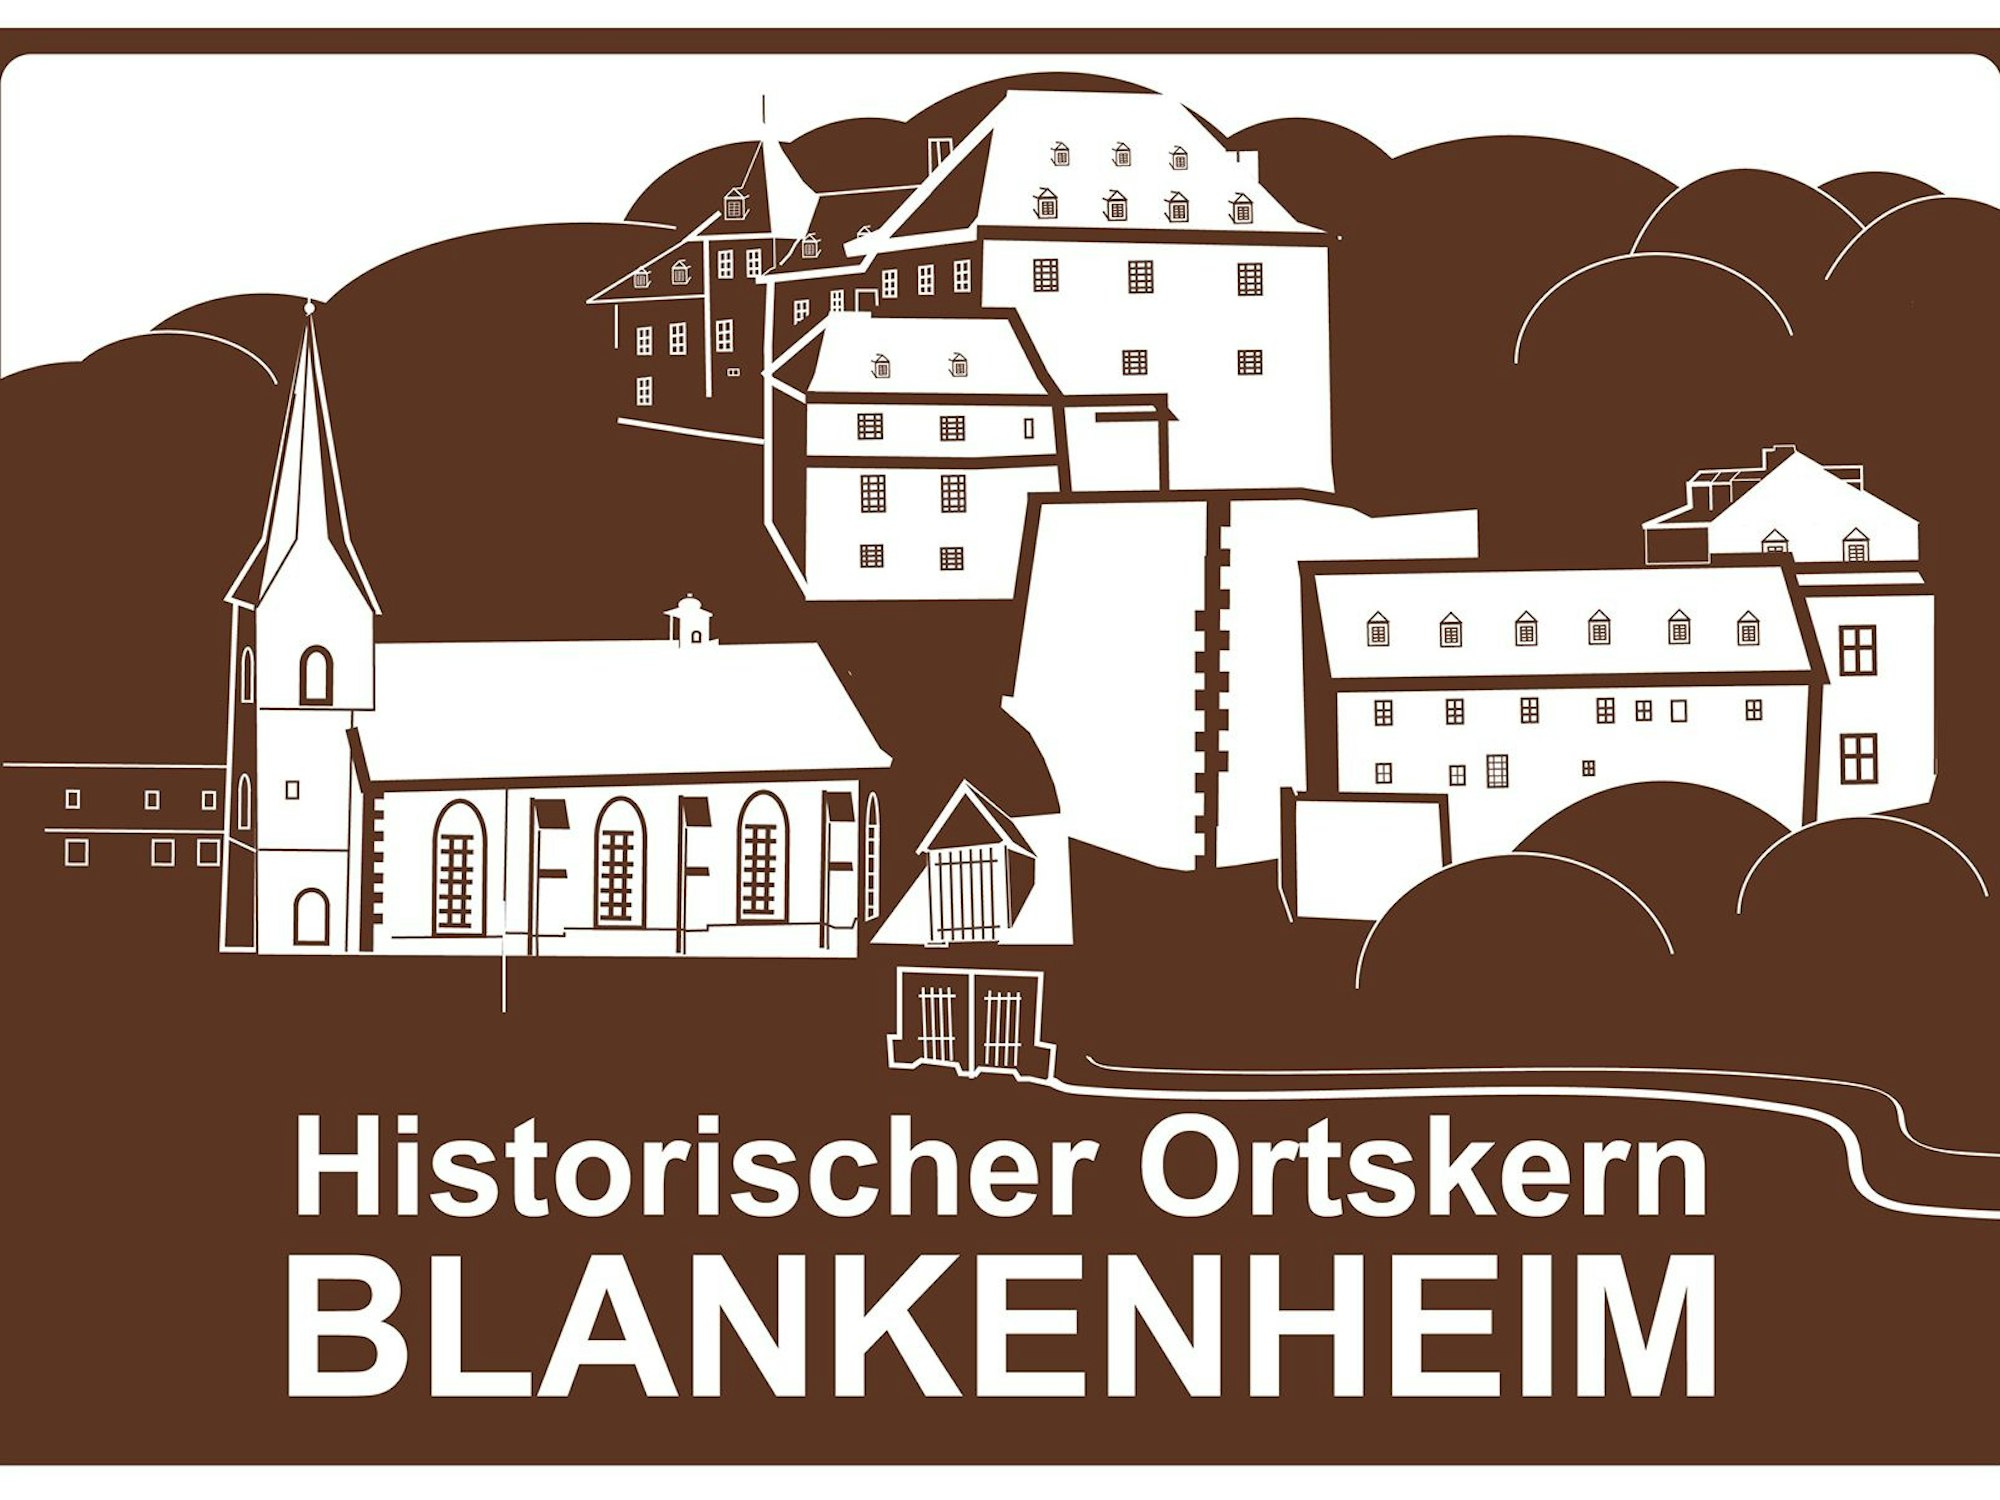 Das Hinweisschild trägt den Schriftzug „Historischer Ortskern Blankenheim“. Im bundesweit einheitlichen Weiß und Braun sind markante Gebäude wie die Burg dargestellt.